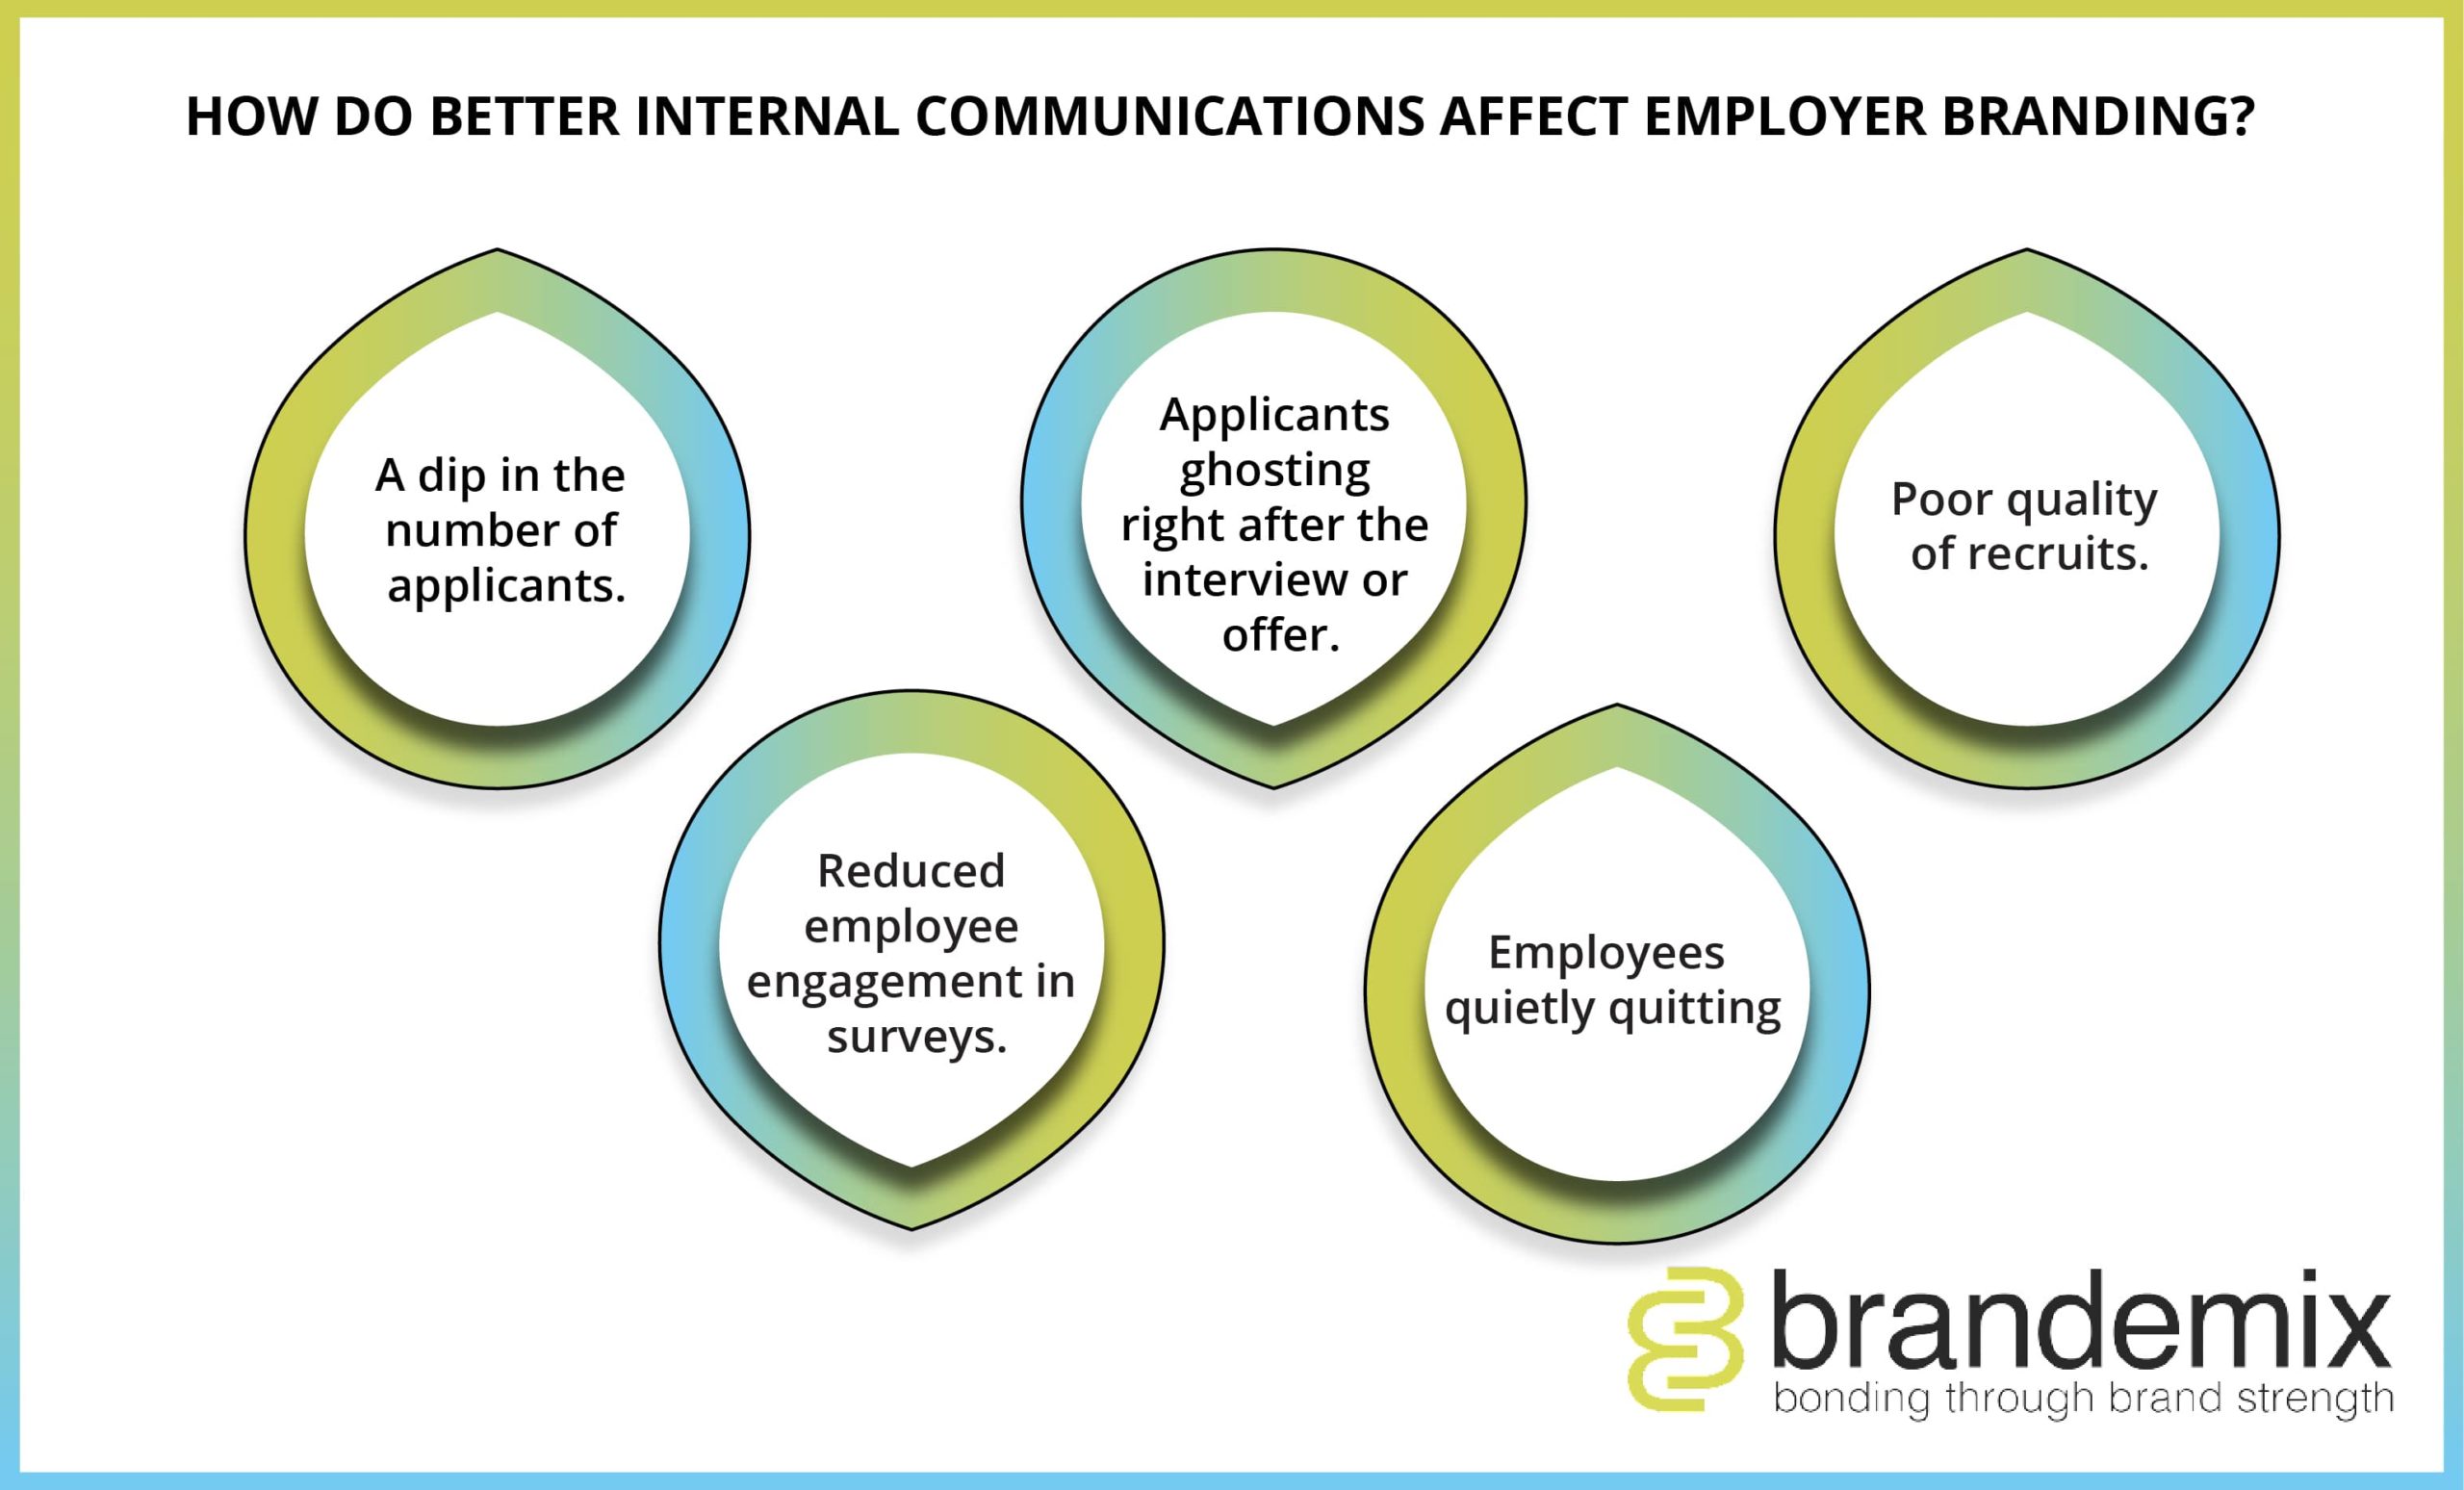 How Do Better Internal Communications Affect Employer Branding?